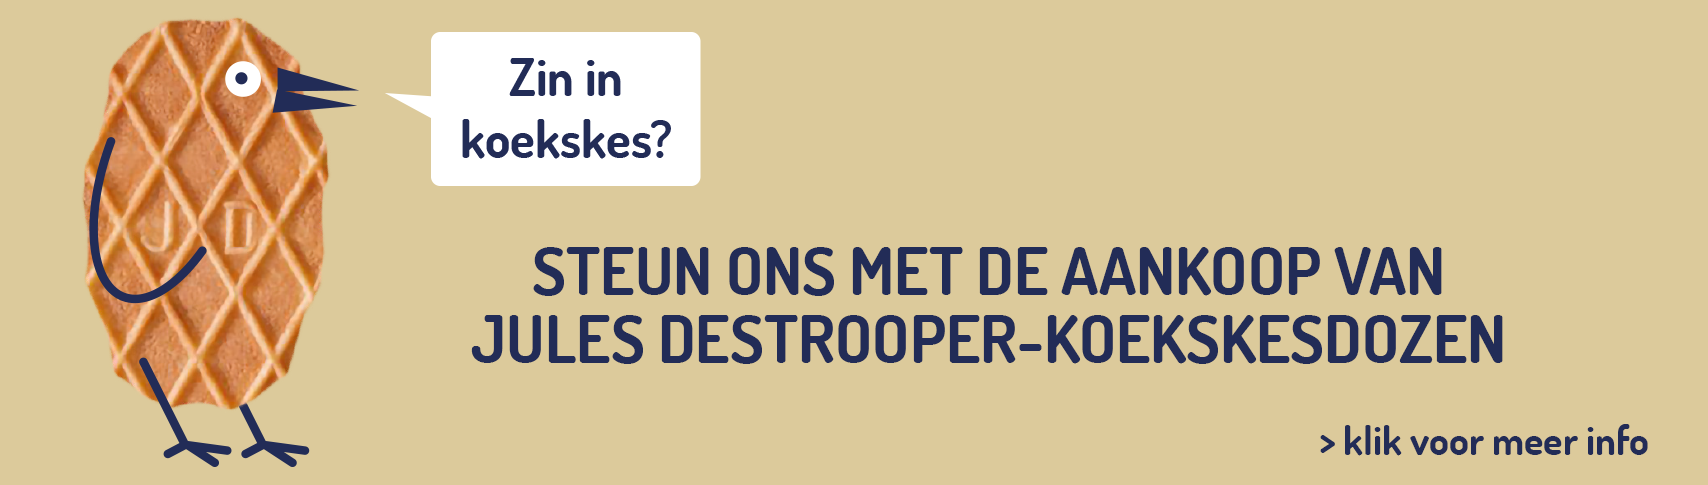 destrooper websitebanner nl